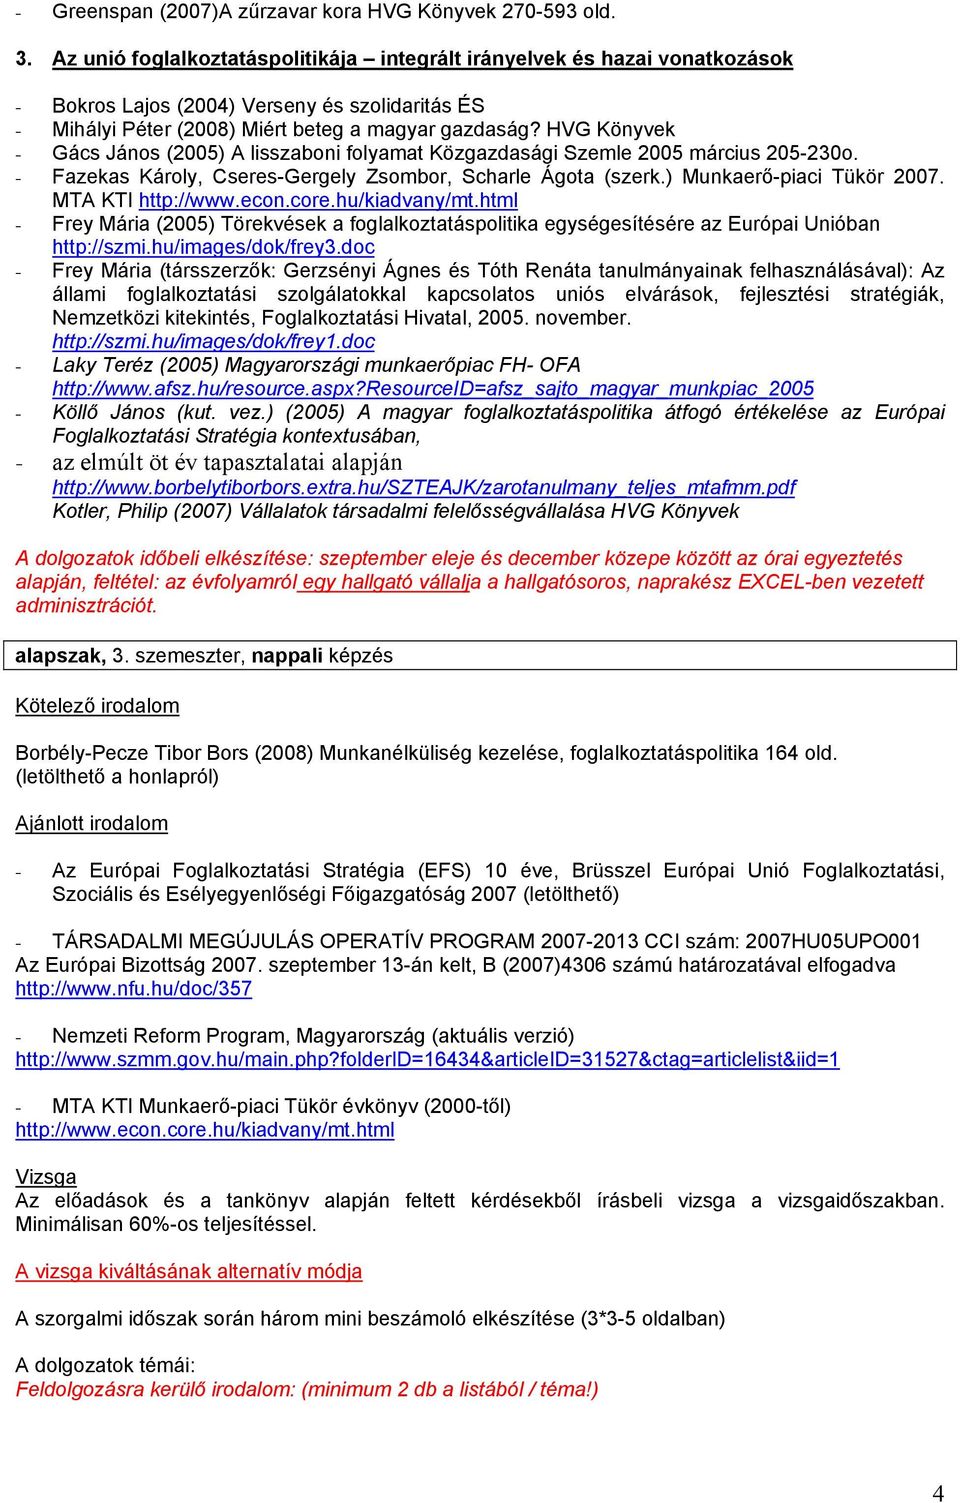 HVG Könyvek - Gács János (2005) A lisszaboni folyamat Közgazdasági Szemle 2005 március 205-230o. - Fazekas Károly, Cseres-Gergely Zsombor, Scharle Ágota (szerk.) Munkaerő-piaci Tükör 2007.